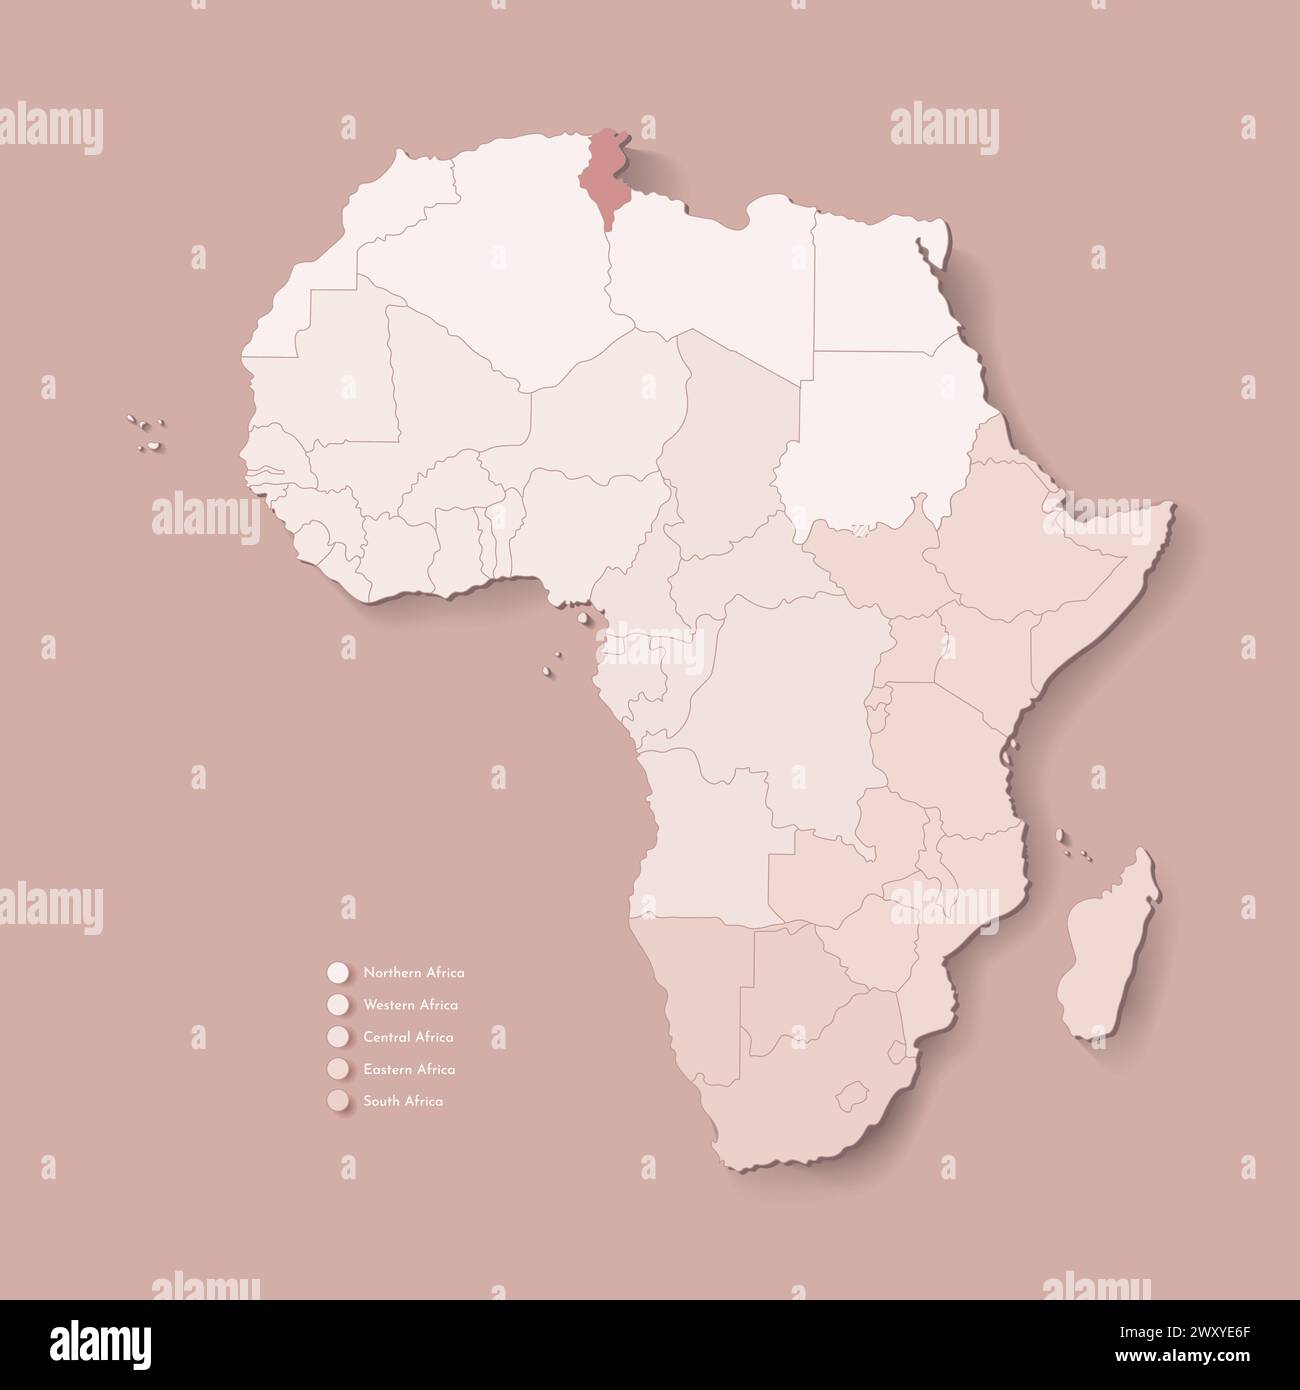 Illustrazione vettoriale con continente africano con confini di tutti gli stati e paese marcato Tunisia. Mappa politica in colori marroni con occidentale, sud AN Illustrazione Vettoriale